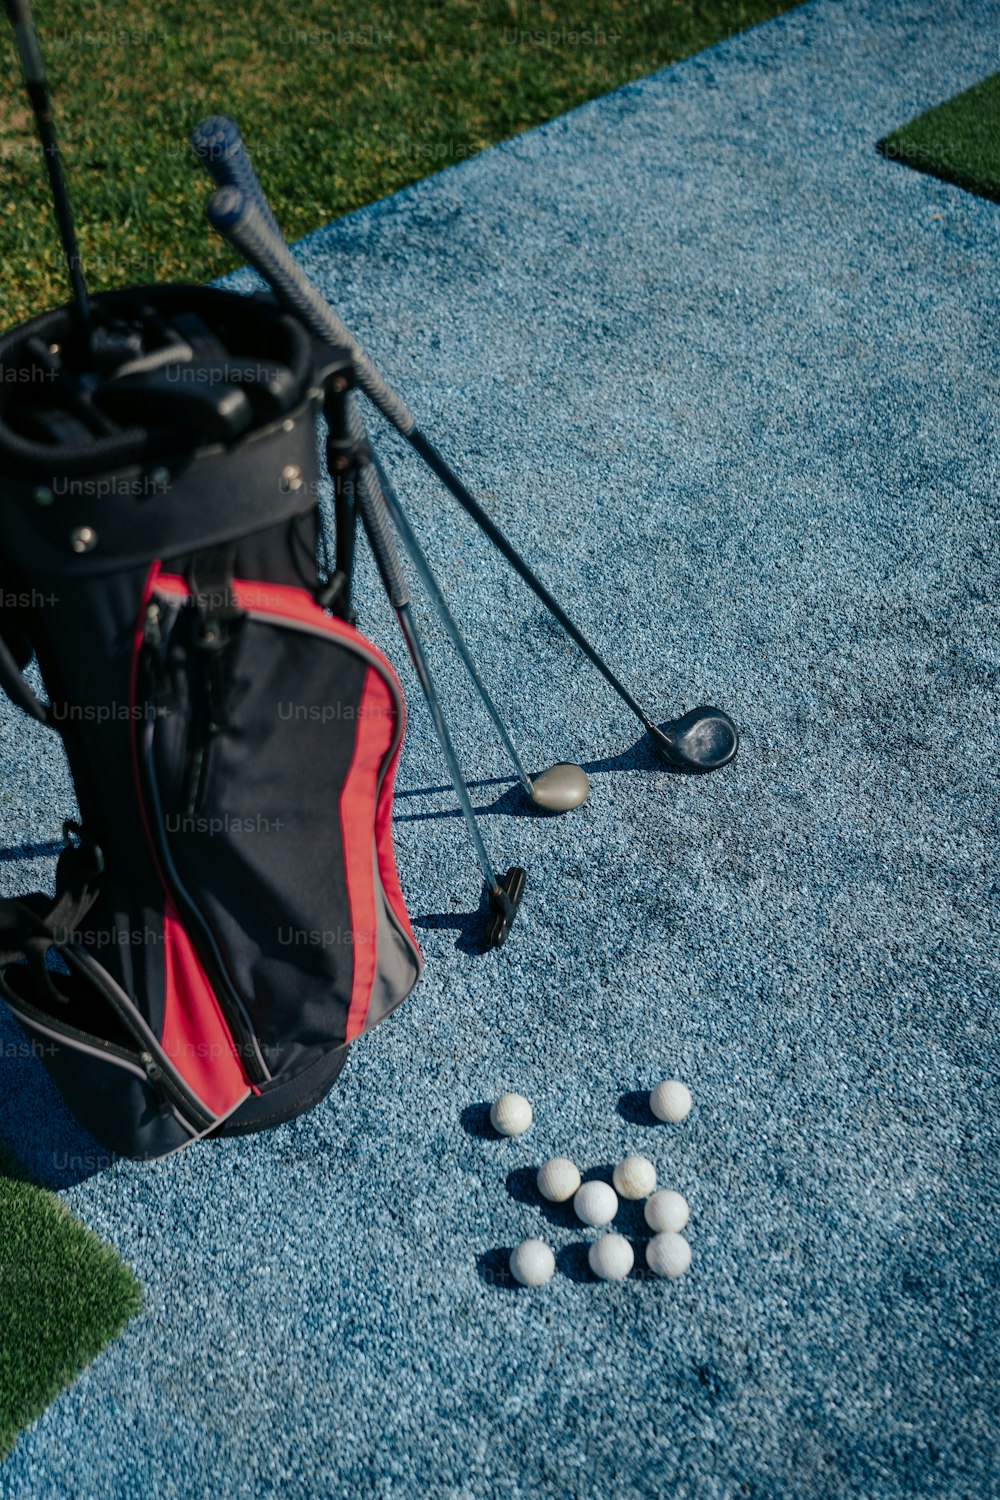 un sac de balles de golf posé sur le sol à côté d’un club de golf